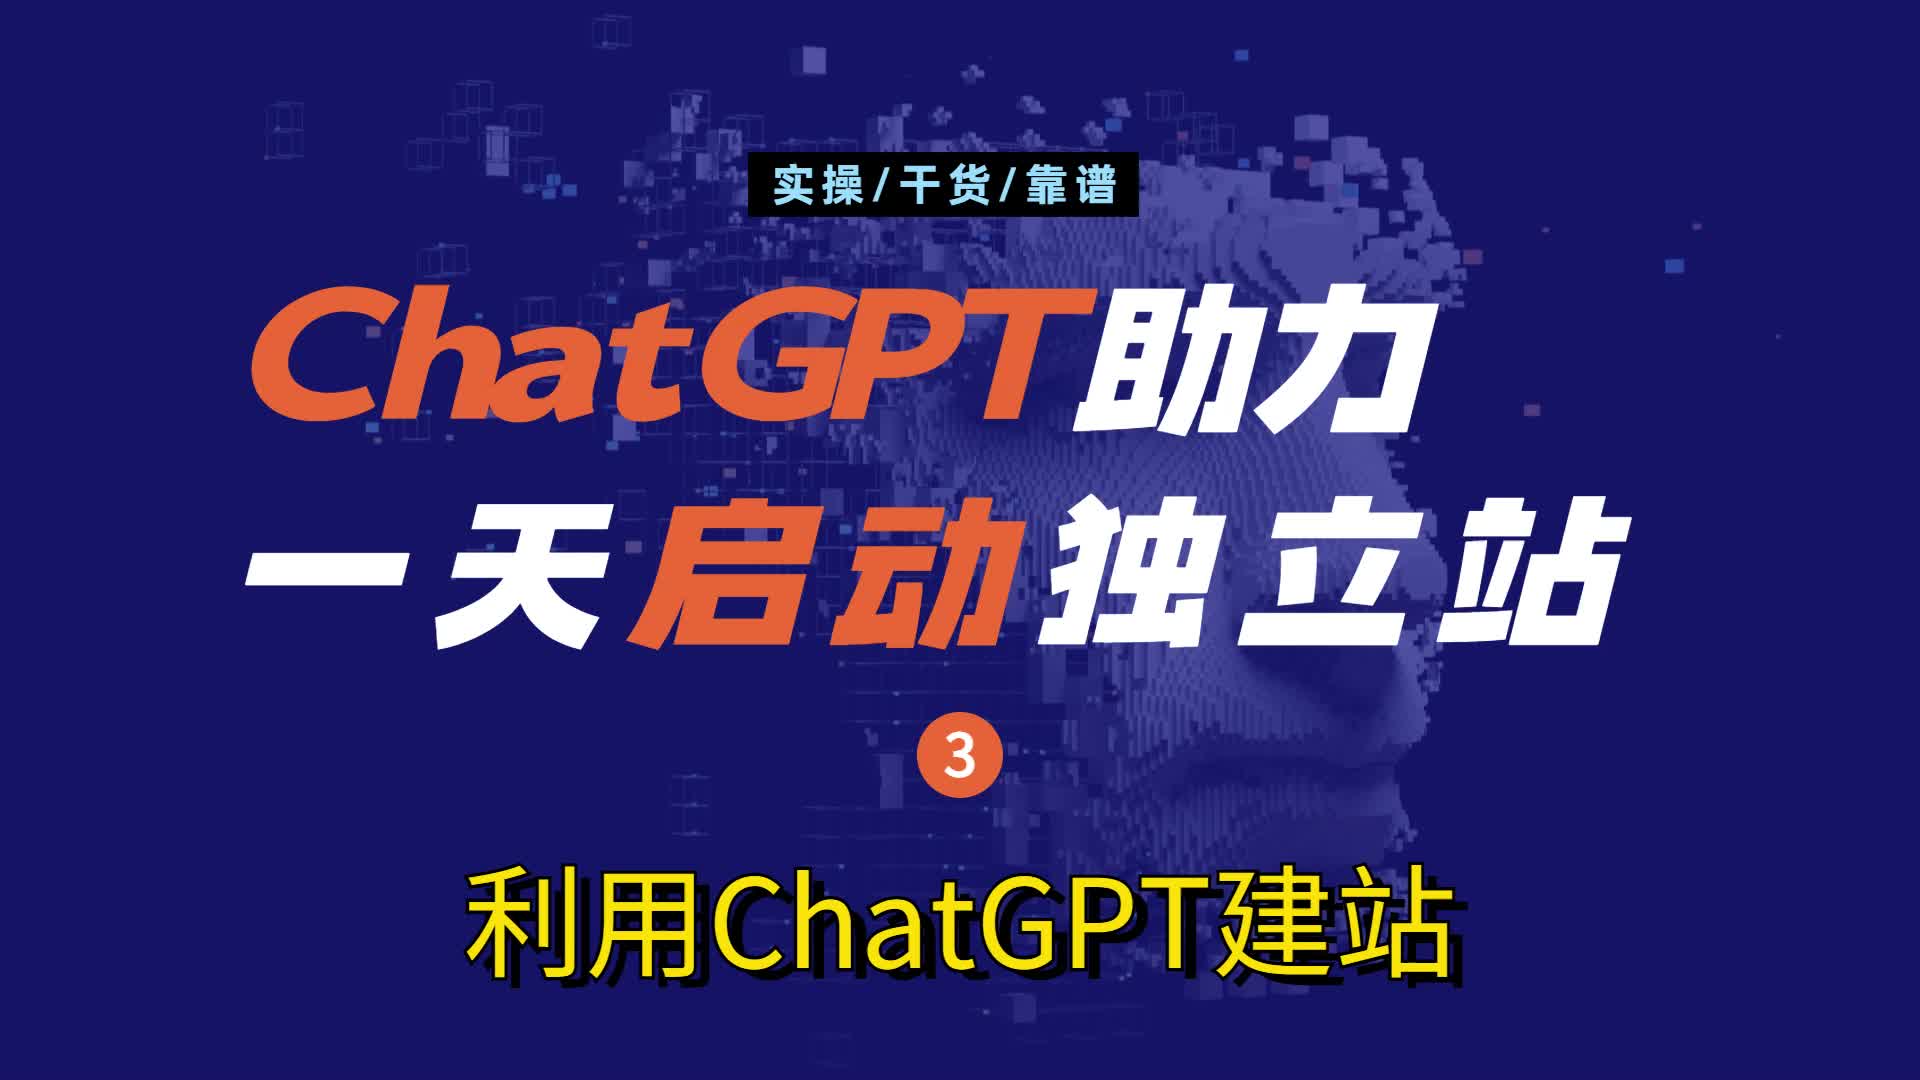 如何利用ChatGPT进行网站搭建-《ChatGPT助力一天启动跨境电商外贸独立站》系列-03